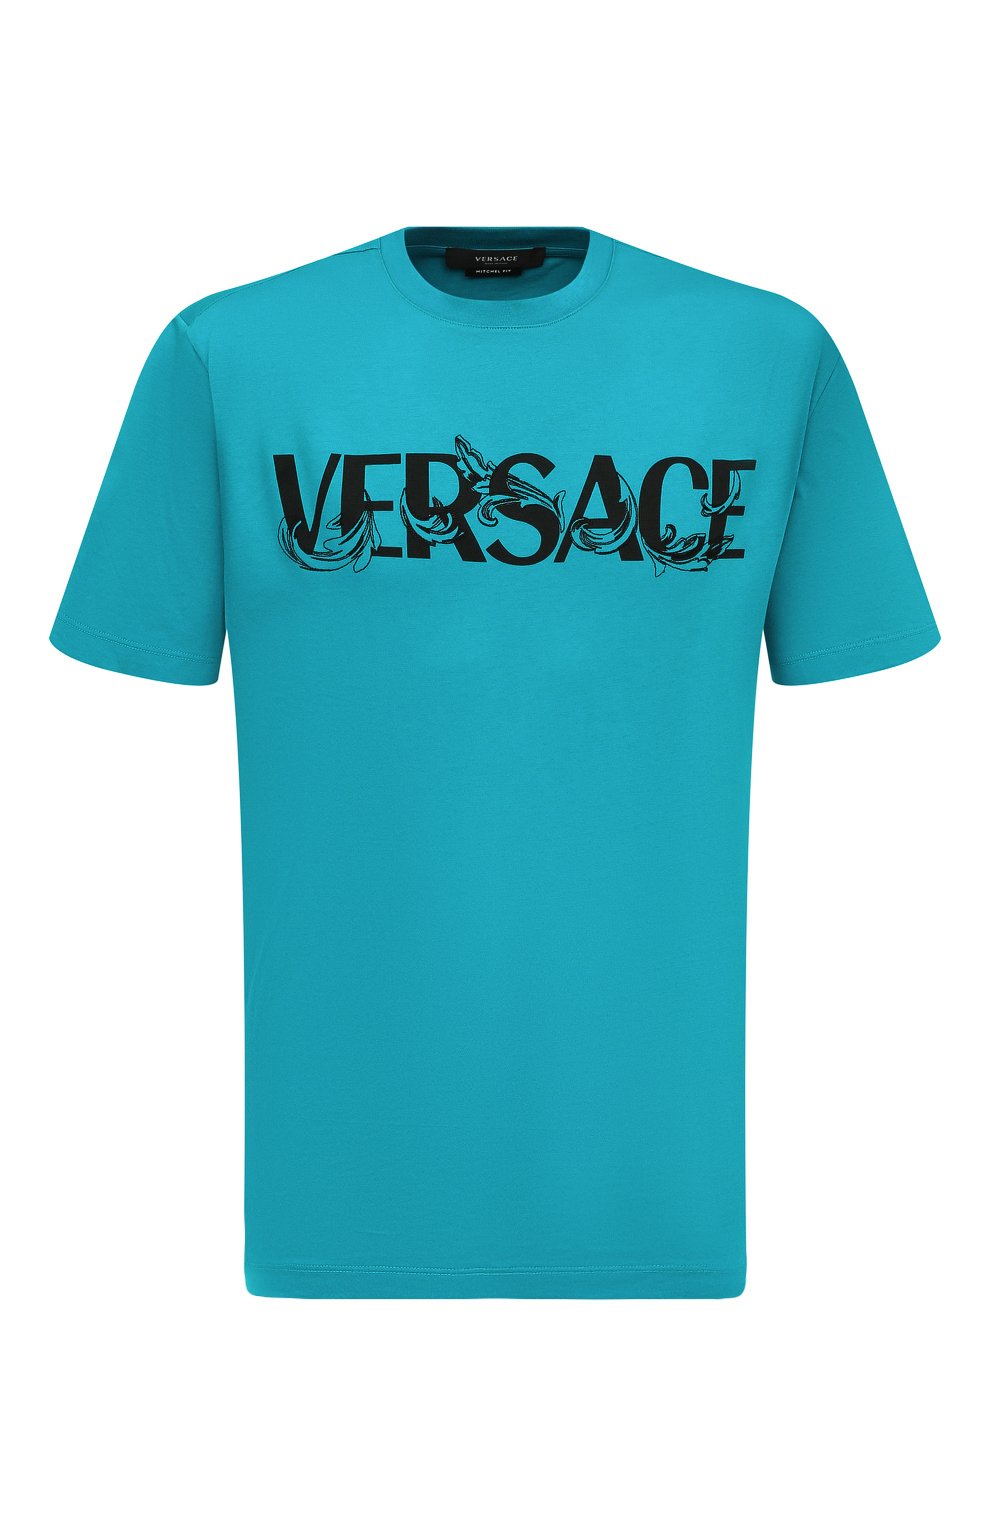 Хлопковая футболка Versace Голубой 1006974_1A04949 6037196